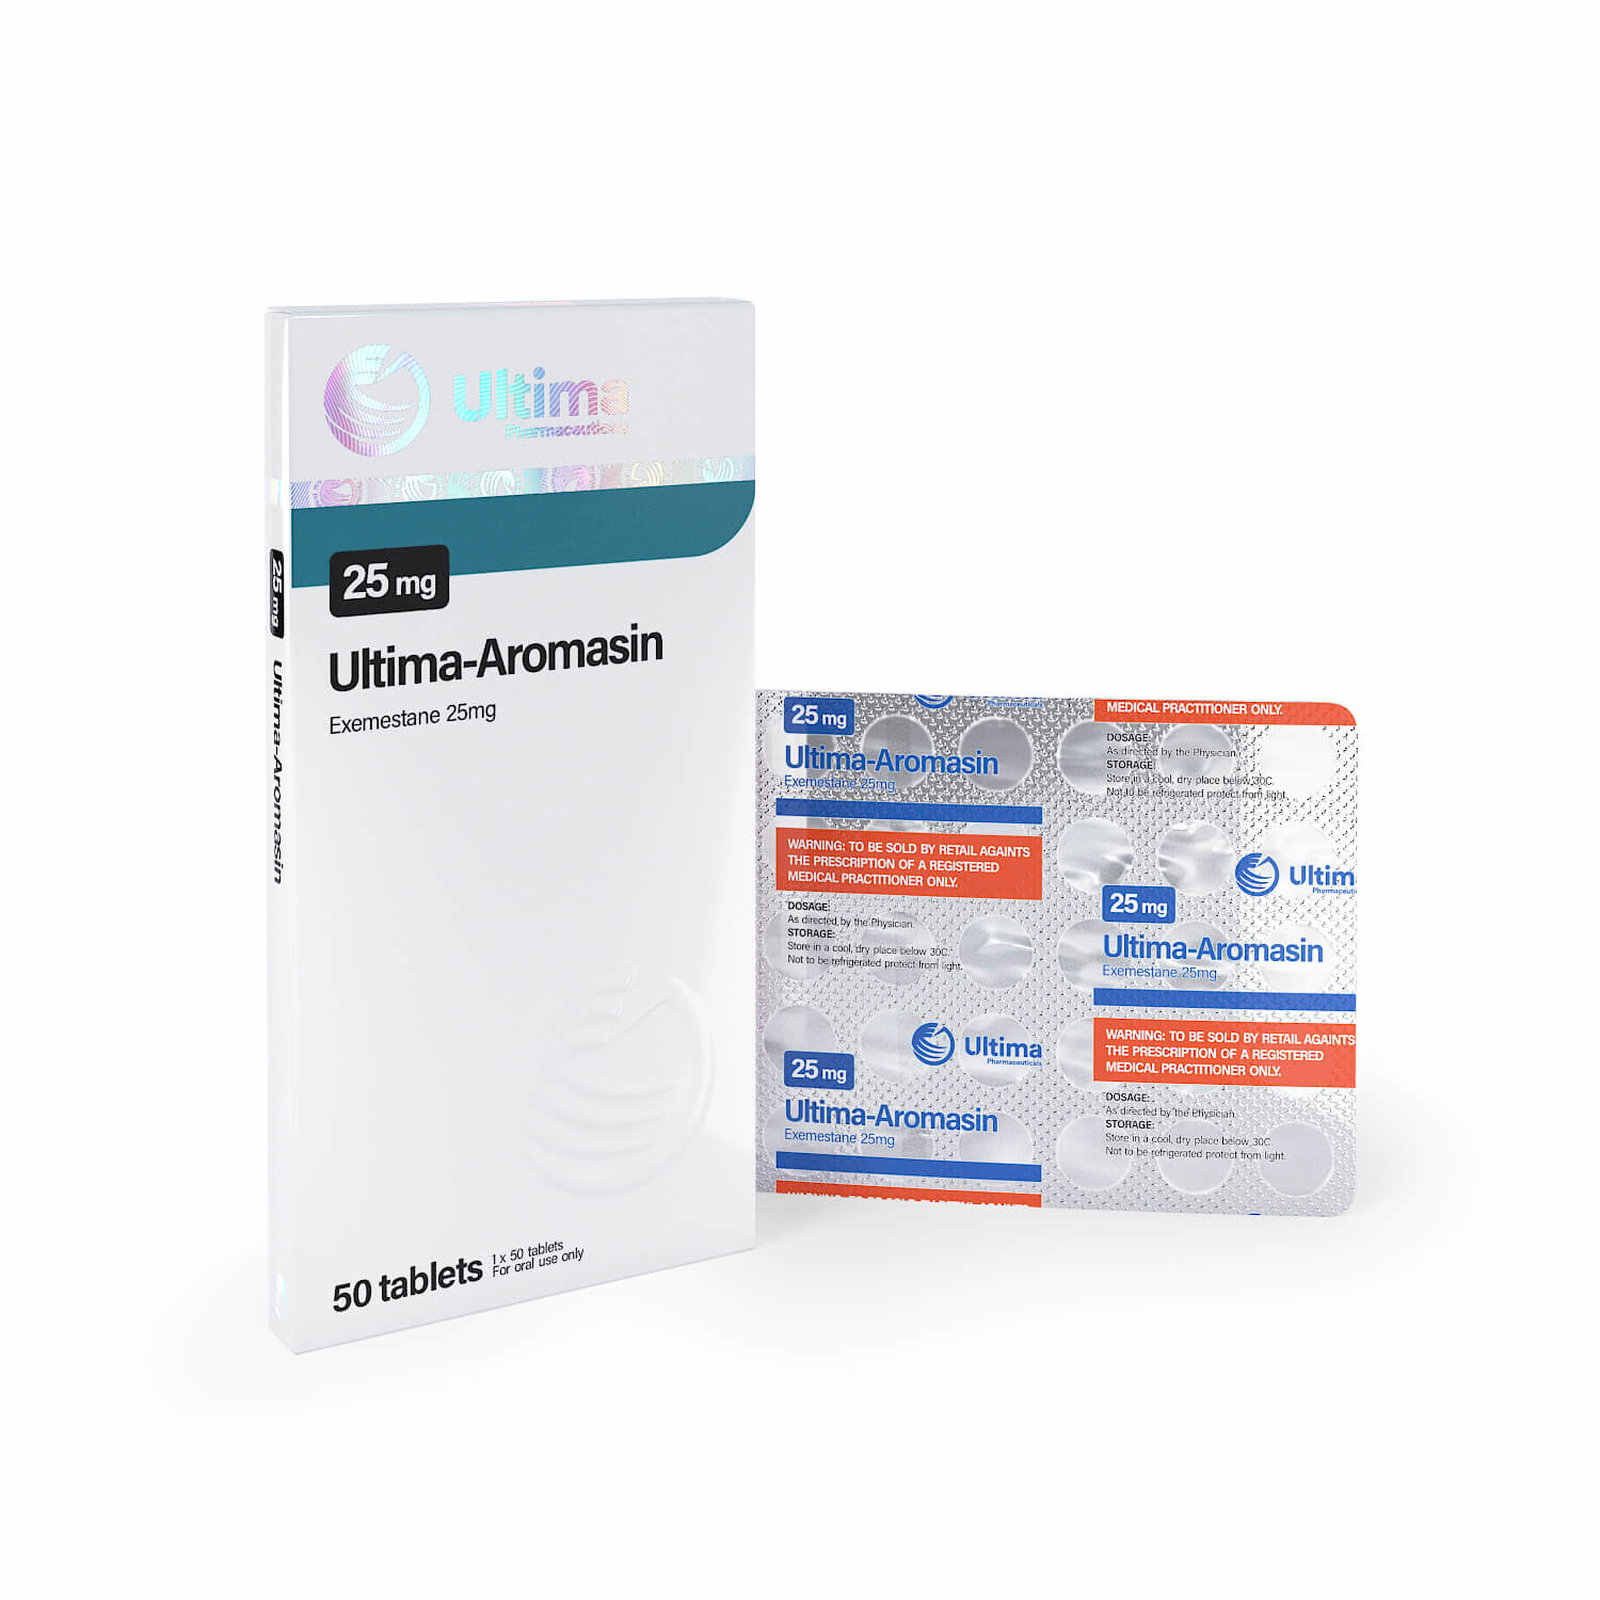 ultima-aromasina-50 comprimidos-x-25-mg